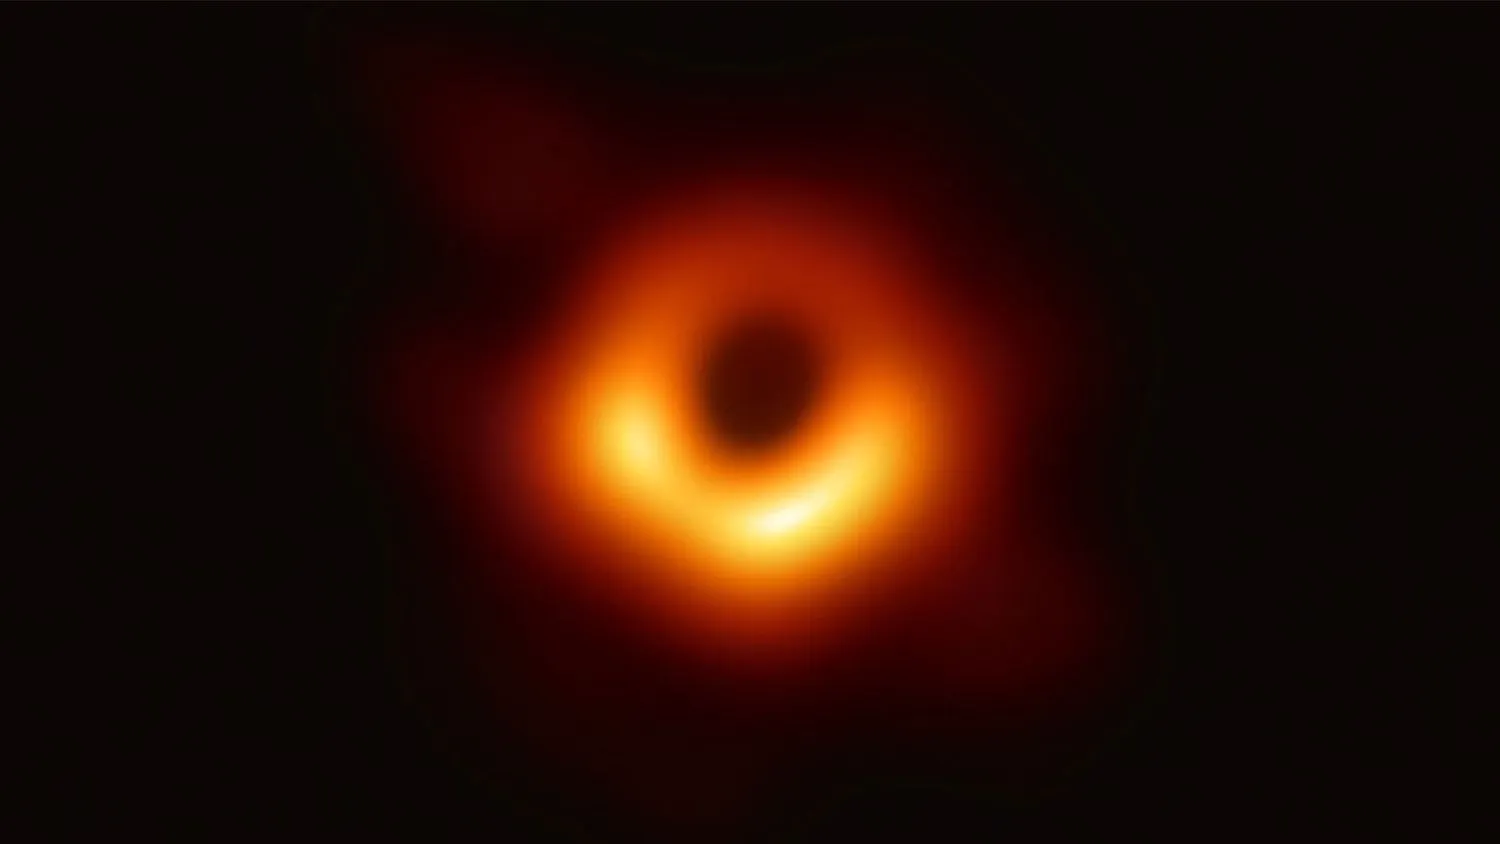 Das Event Horizon Telescope, eine in internationaler Zusammenarbeit entstandene Anordnung von acht bodengestützten Radioteleskopen in Planetengröße, hat dieses Bild des supermassiven schwarzen Lochs im Zentrum der Galaxie M87 und seines Schattens aufgenommen.